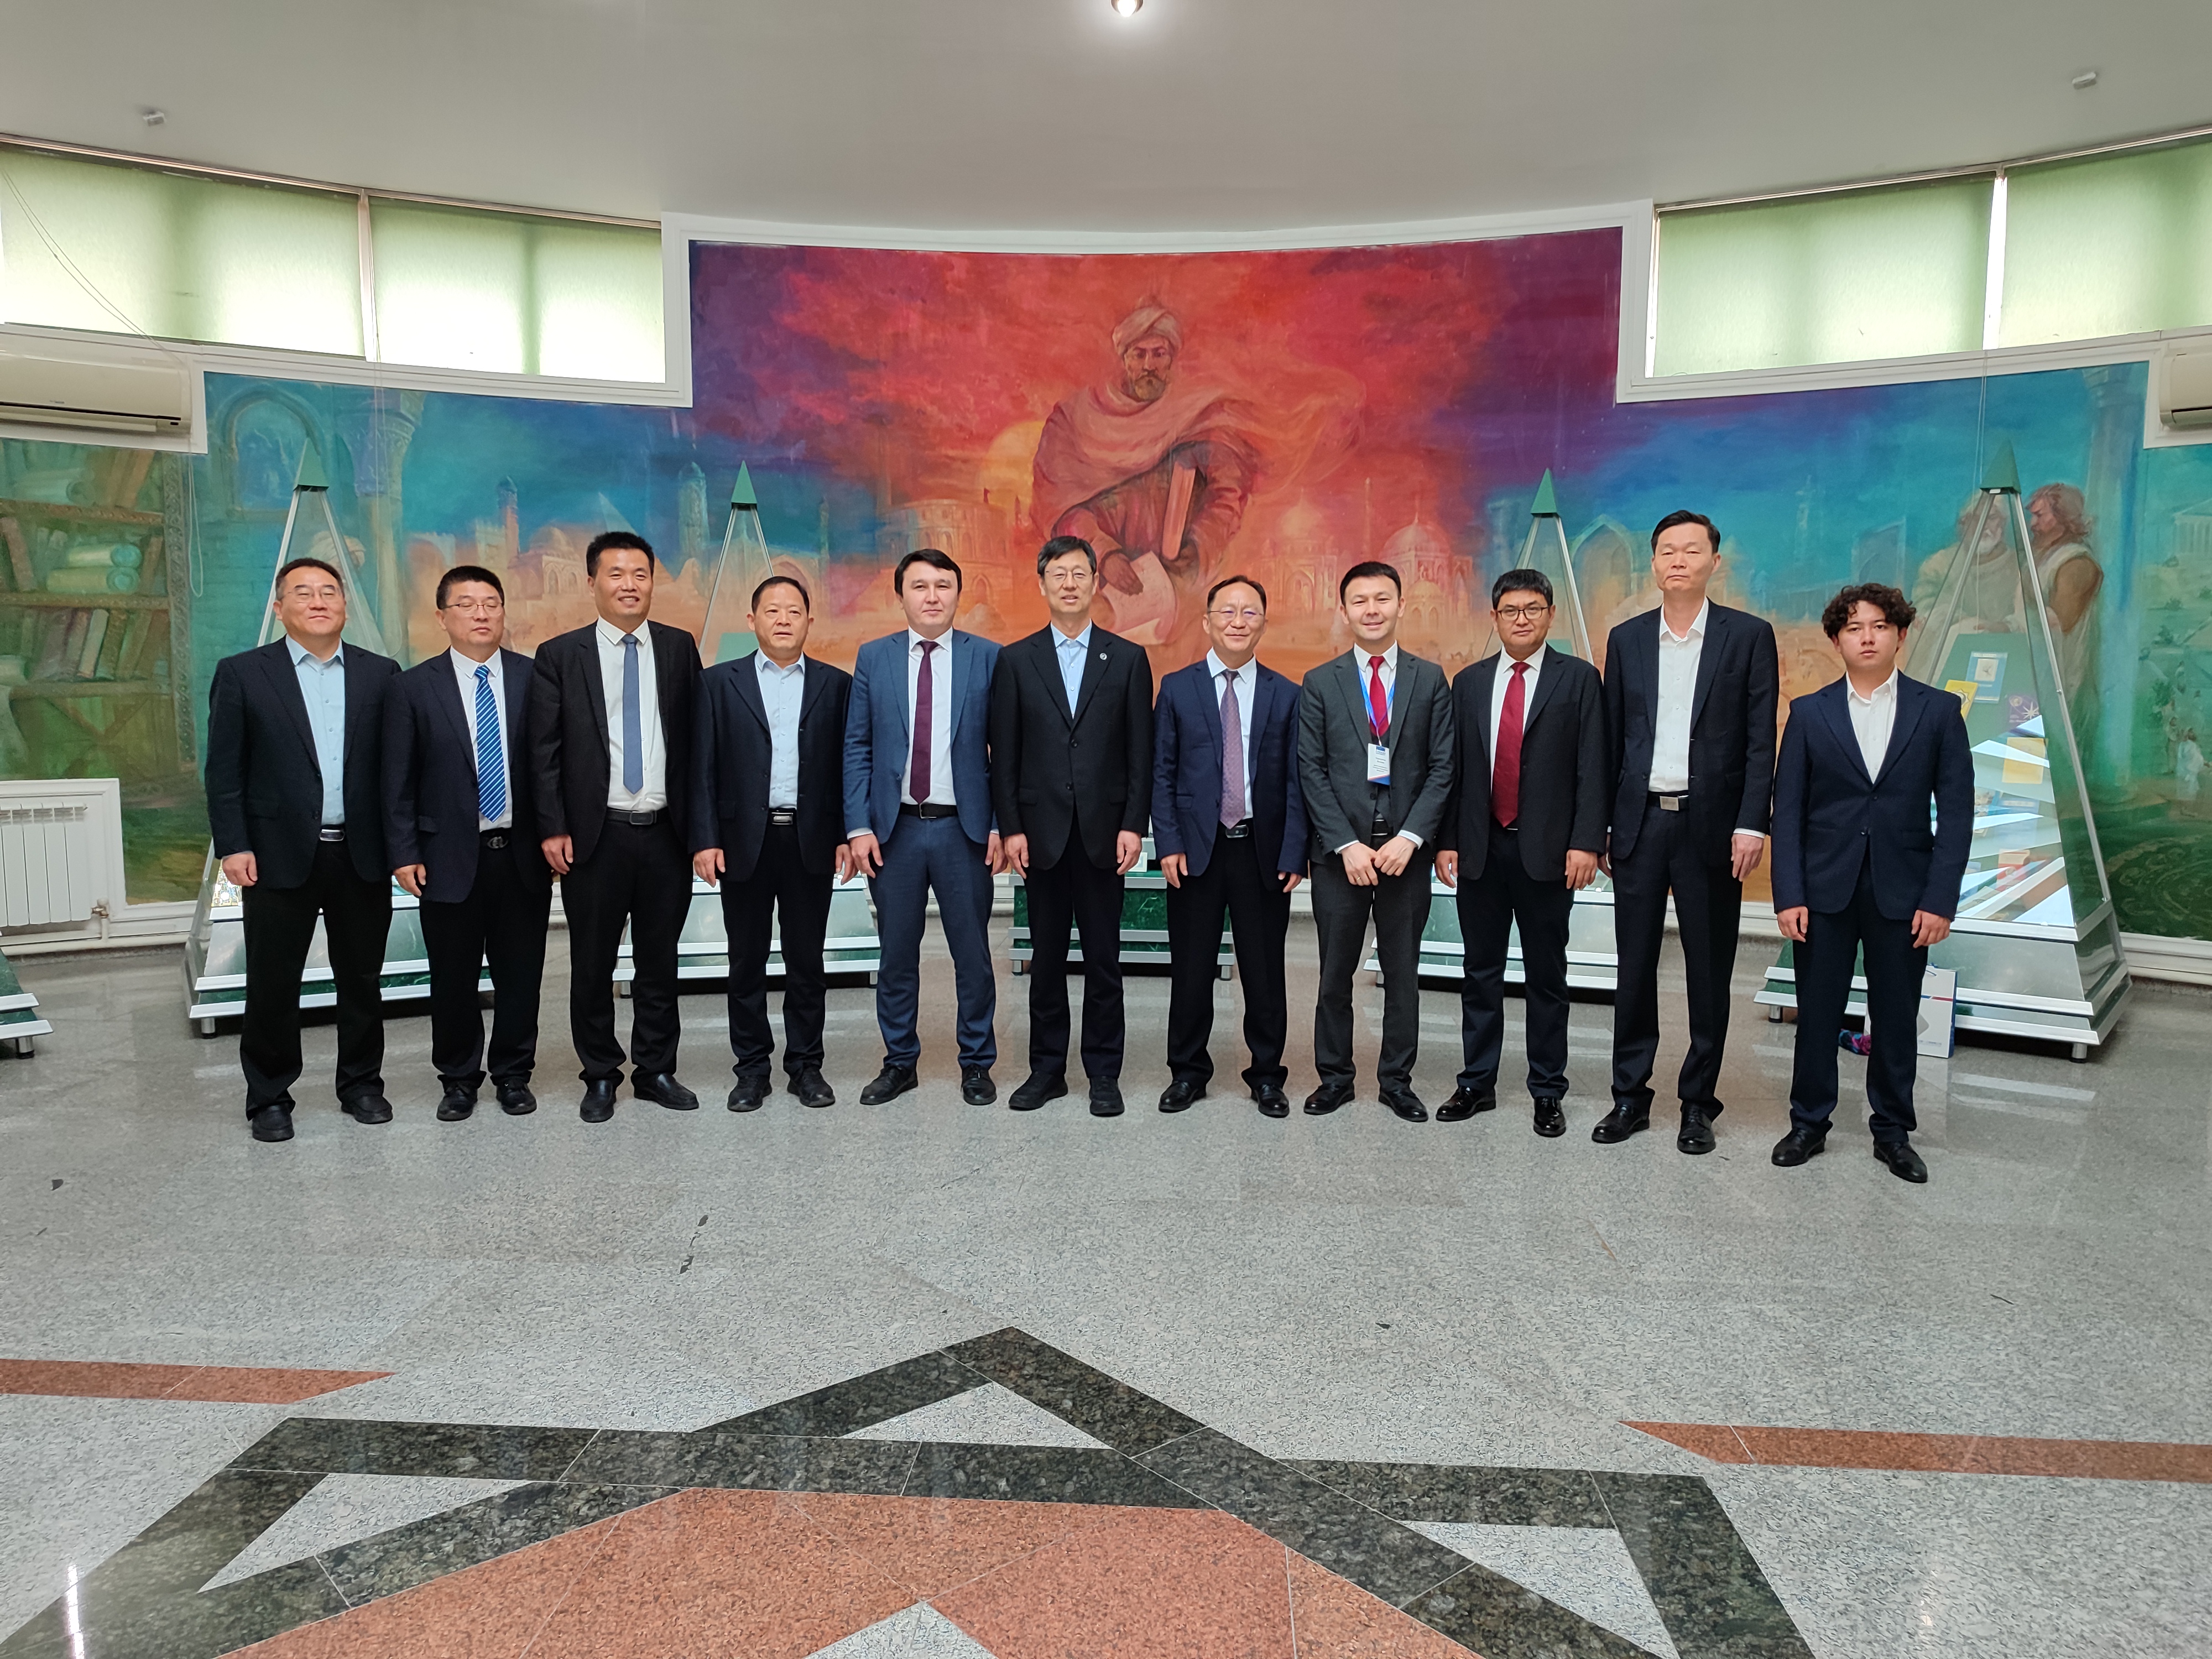 Казахский национальный университет имени Аль-Фараби с рабочим визитом посетила делегация научно-технического бюро в г. Цзинань КНР и представители компании Powerchina Sepco1 Electric Power Construction Co.Ltd